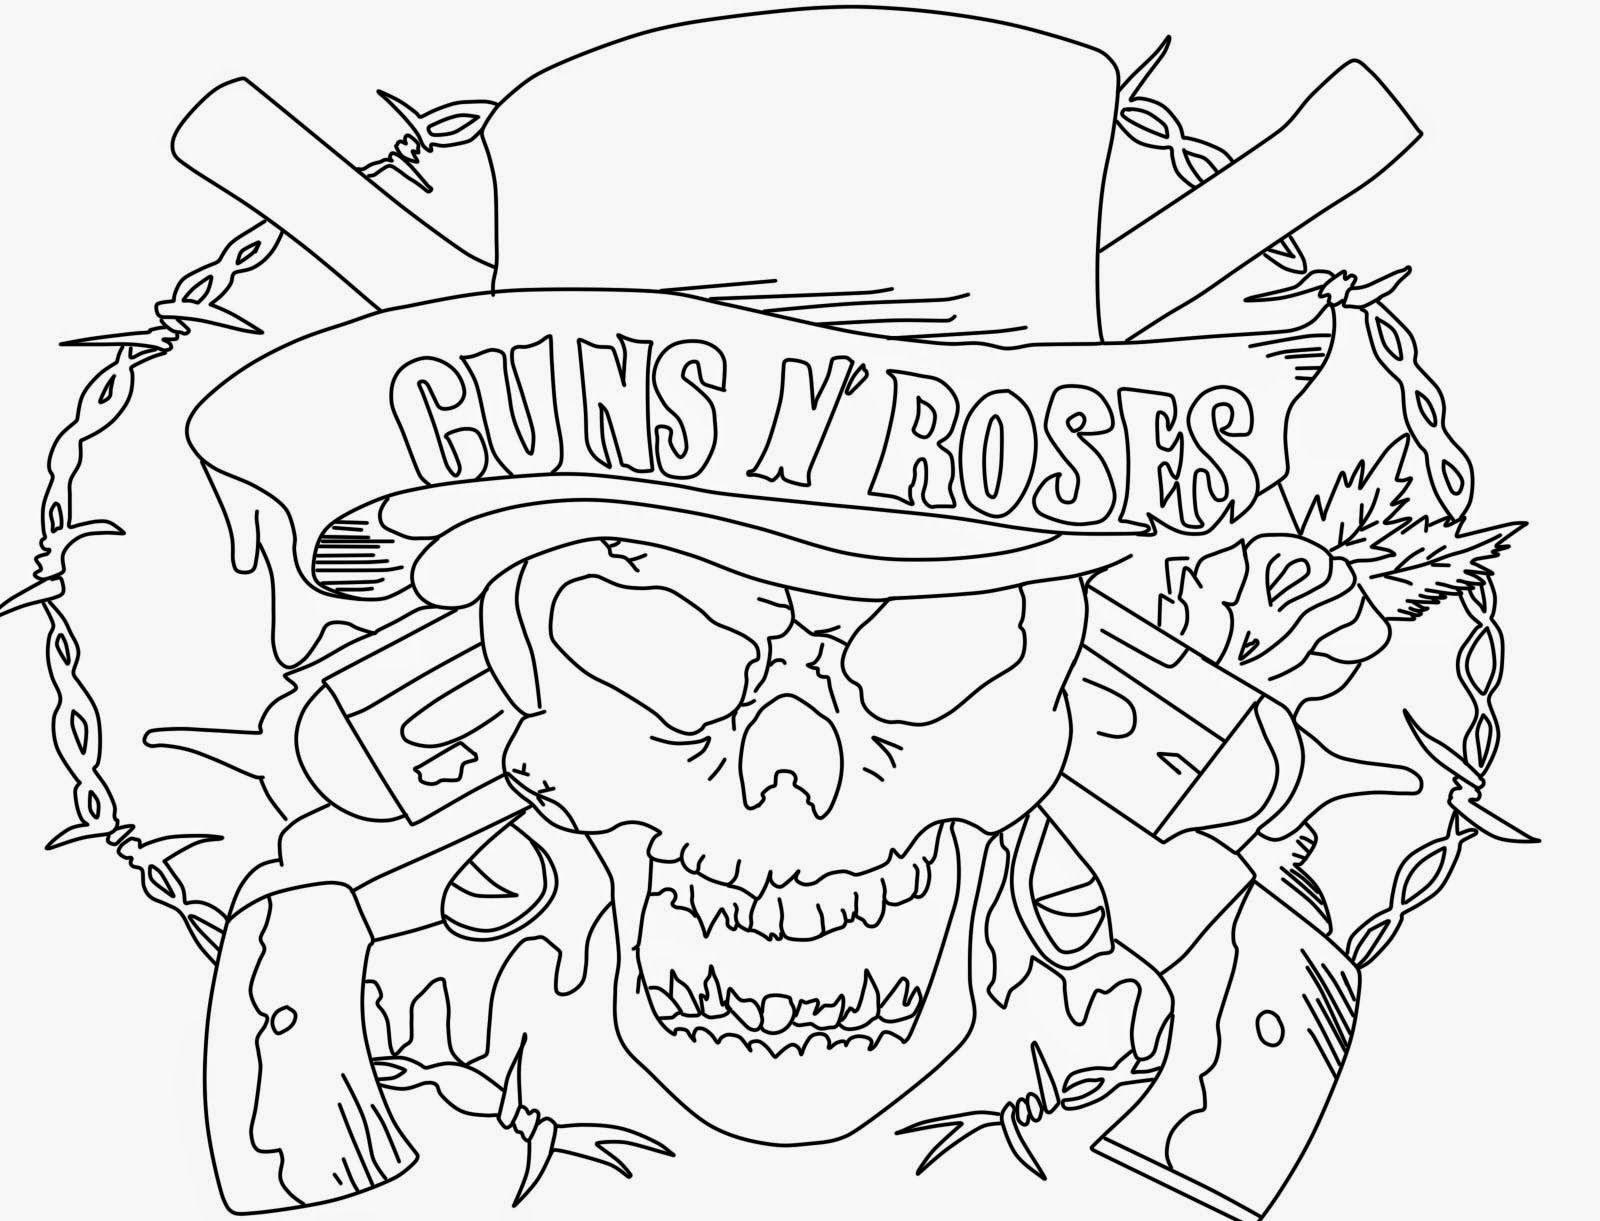 Guns and Roses Coloring Pages Logo - guns n roses coloring pages to draw guns n roses